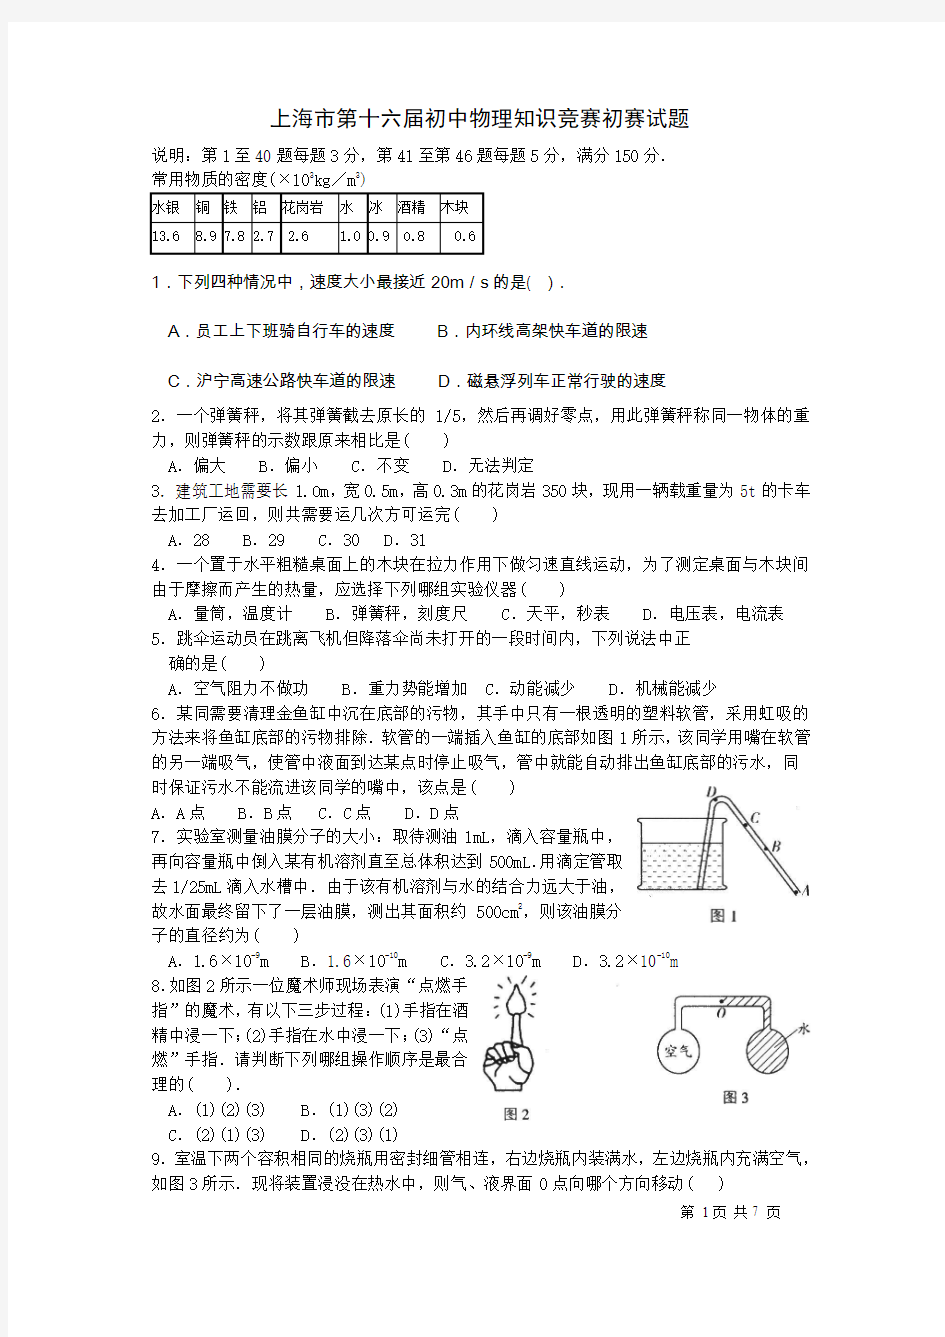 2002年上海市第十六届初中物理竞赛初赛试题及解答